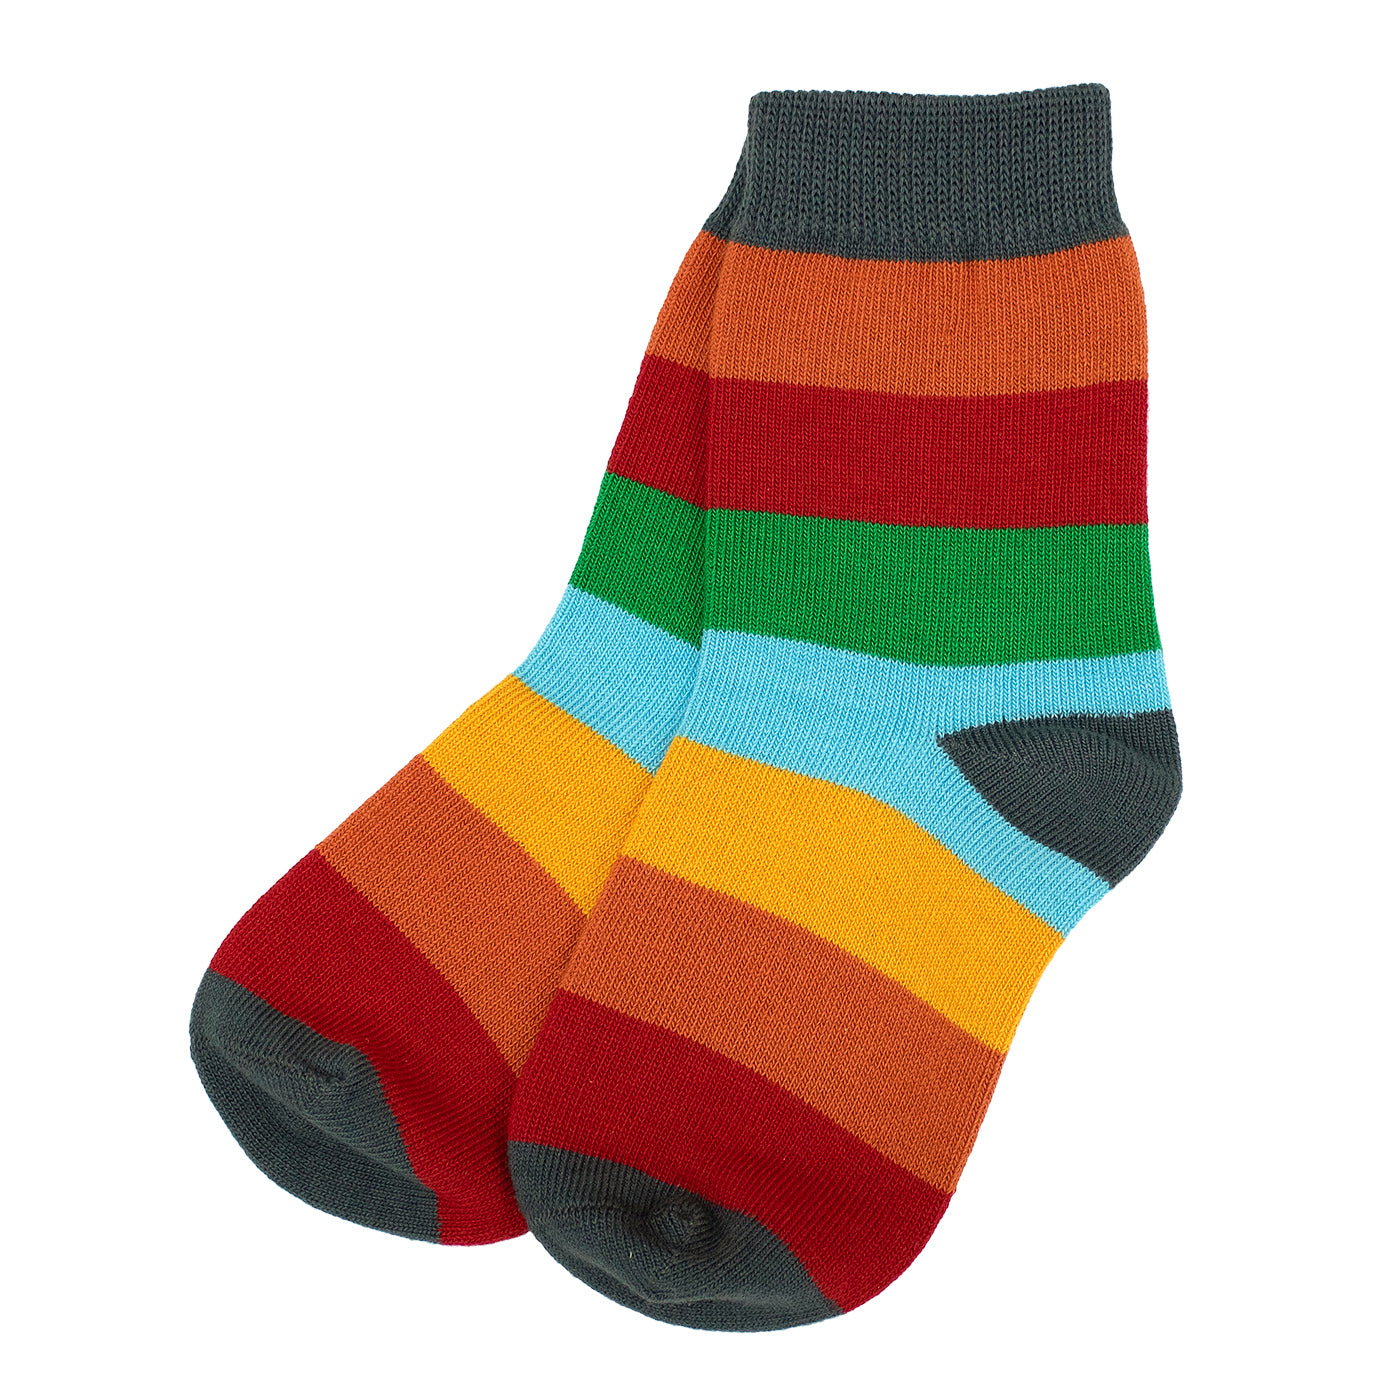 Sokken / Socks Multistripe Dublin (t/m 37-39) - Villervalla